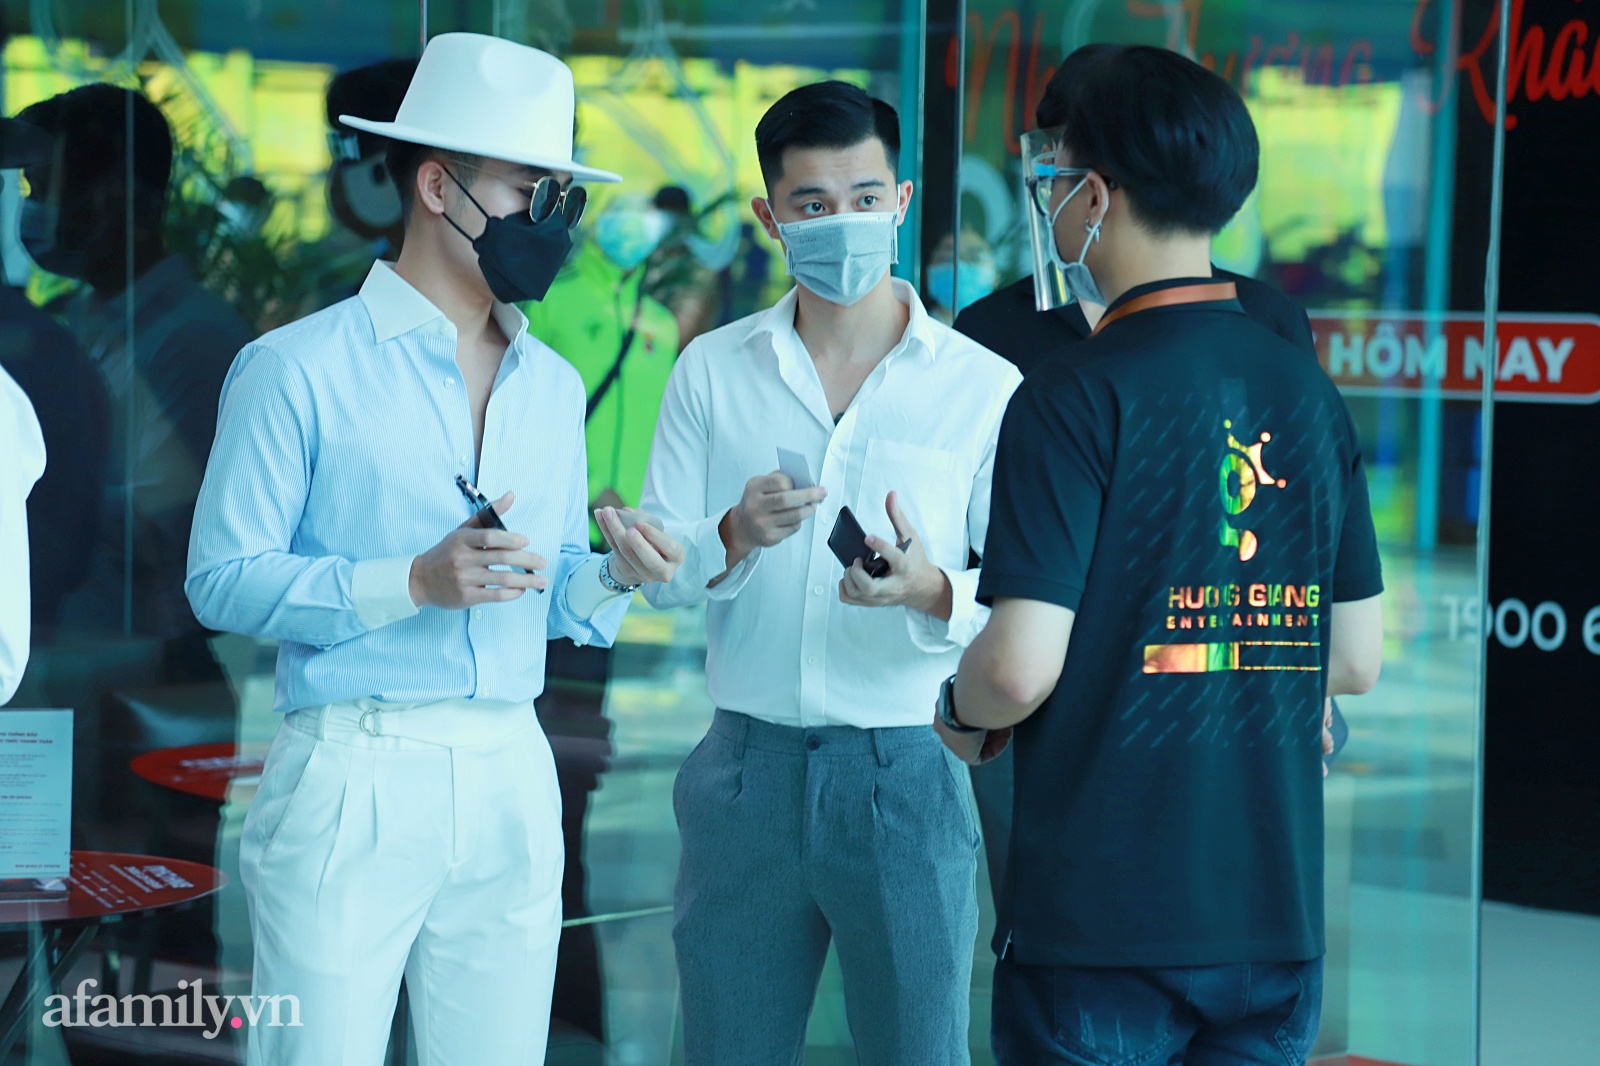 Diễn viên, người mẫu, thí sinh tóc dài, trai Tây tất tần tật đều có trong buổi casting show thực tế mới của Hương Giang - Ảnh 8.